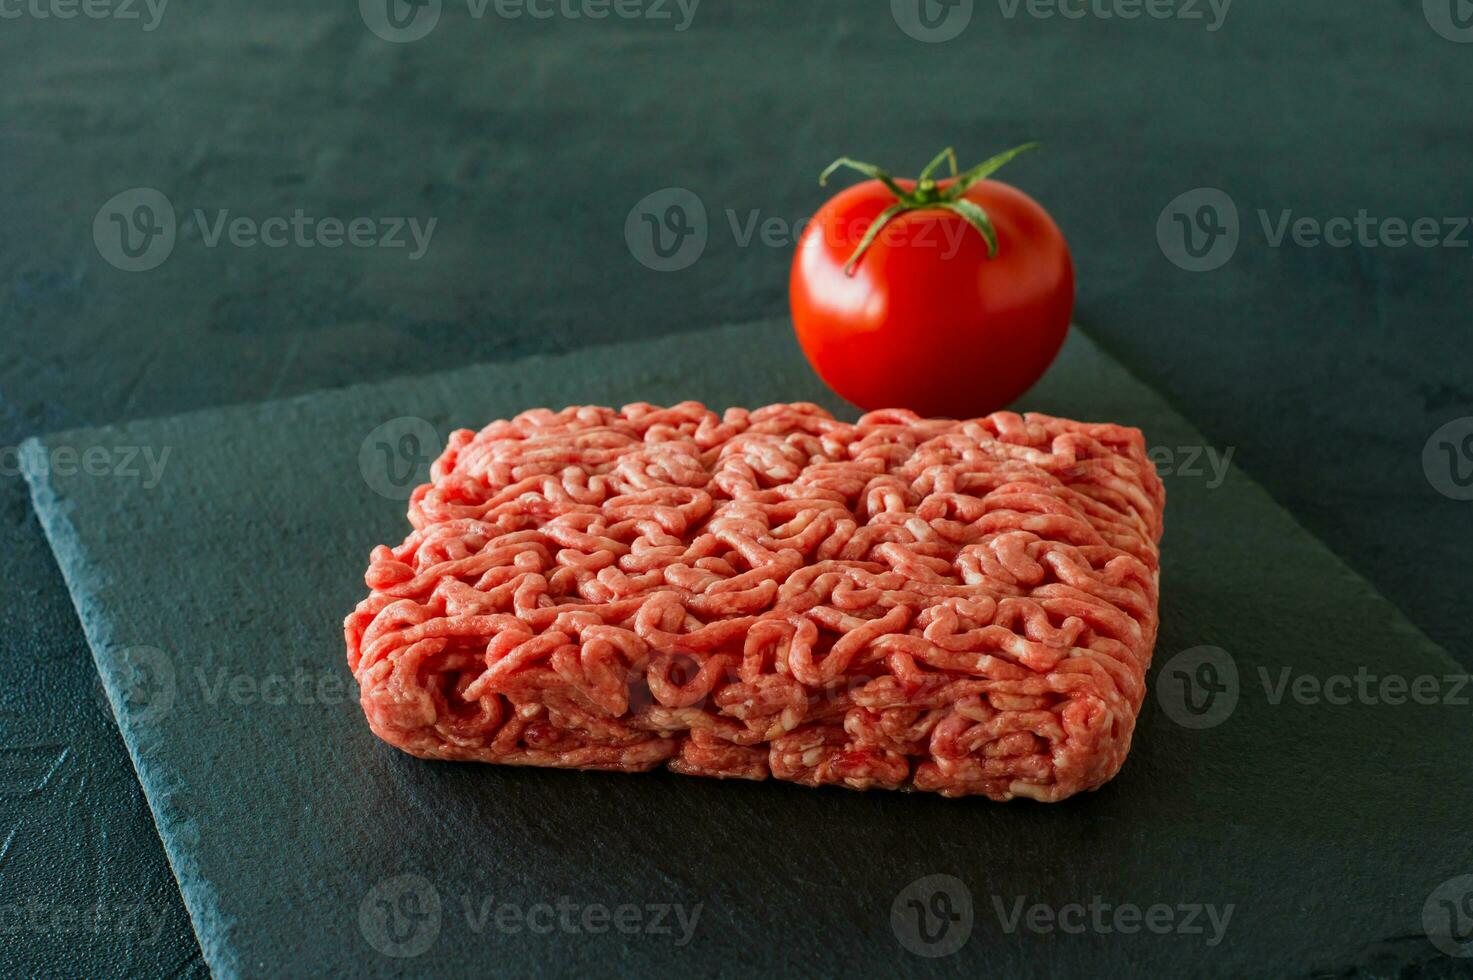 viande de boeuf hachée crue sur une ardoise à la tomate. photo